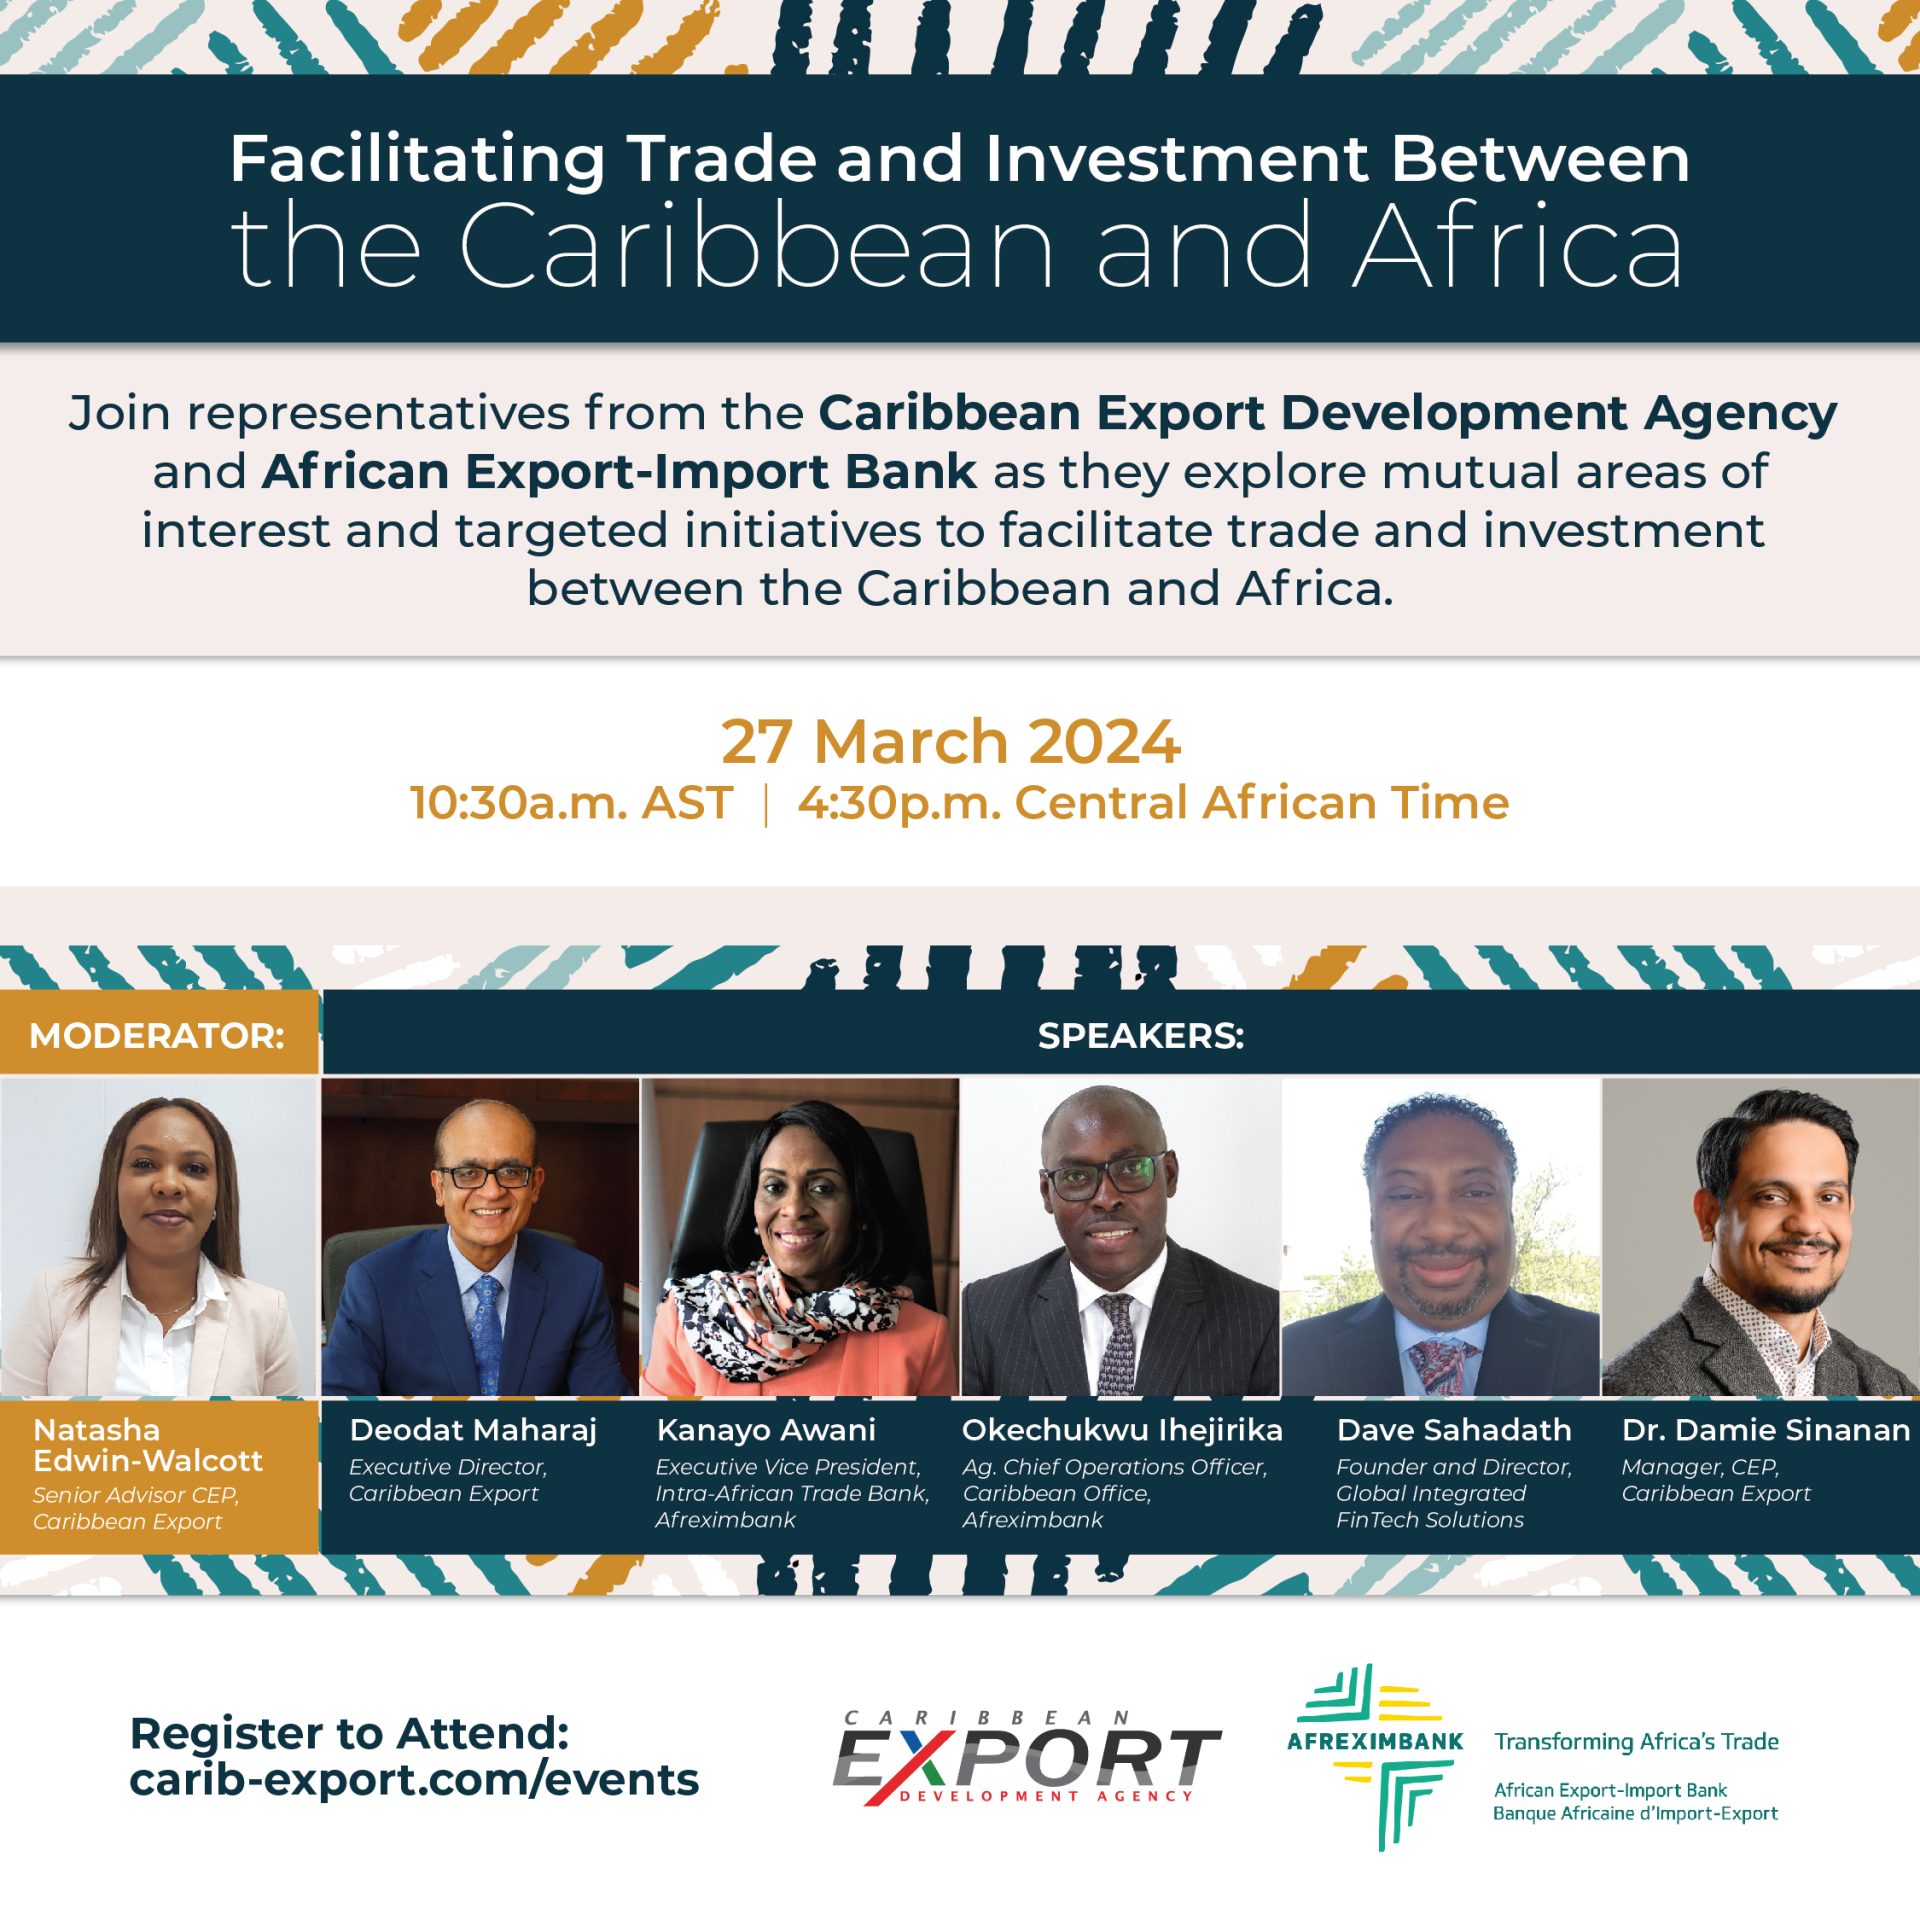 Facilitar el comercio y la inversión entre el Caribe y África